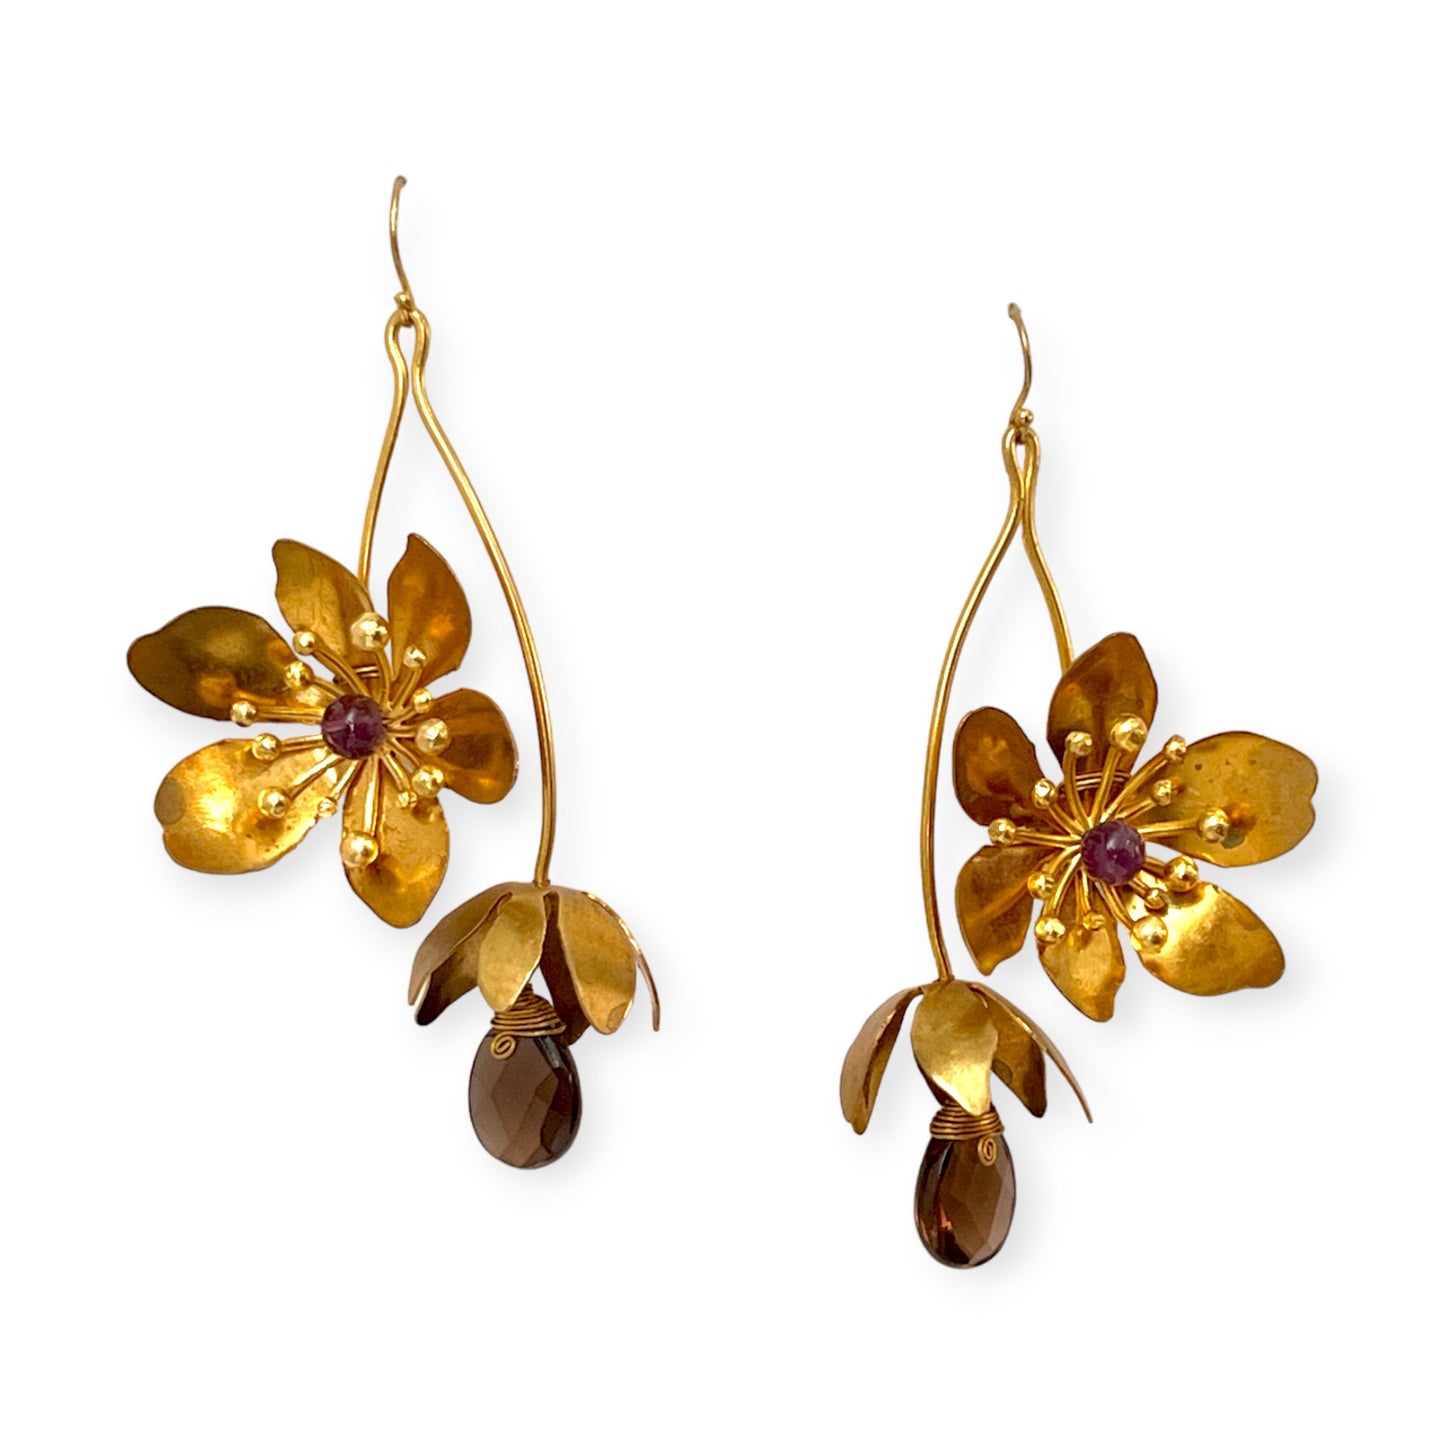 Flower Power - floral drop statement earrings with gemstones - Sundara Joon